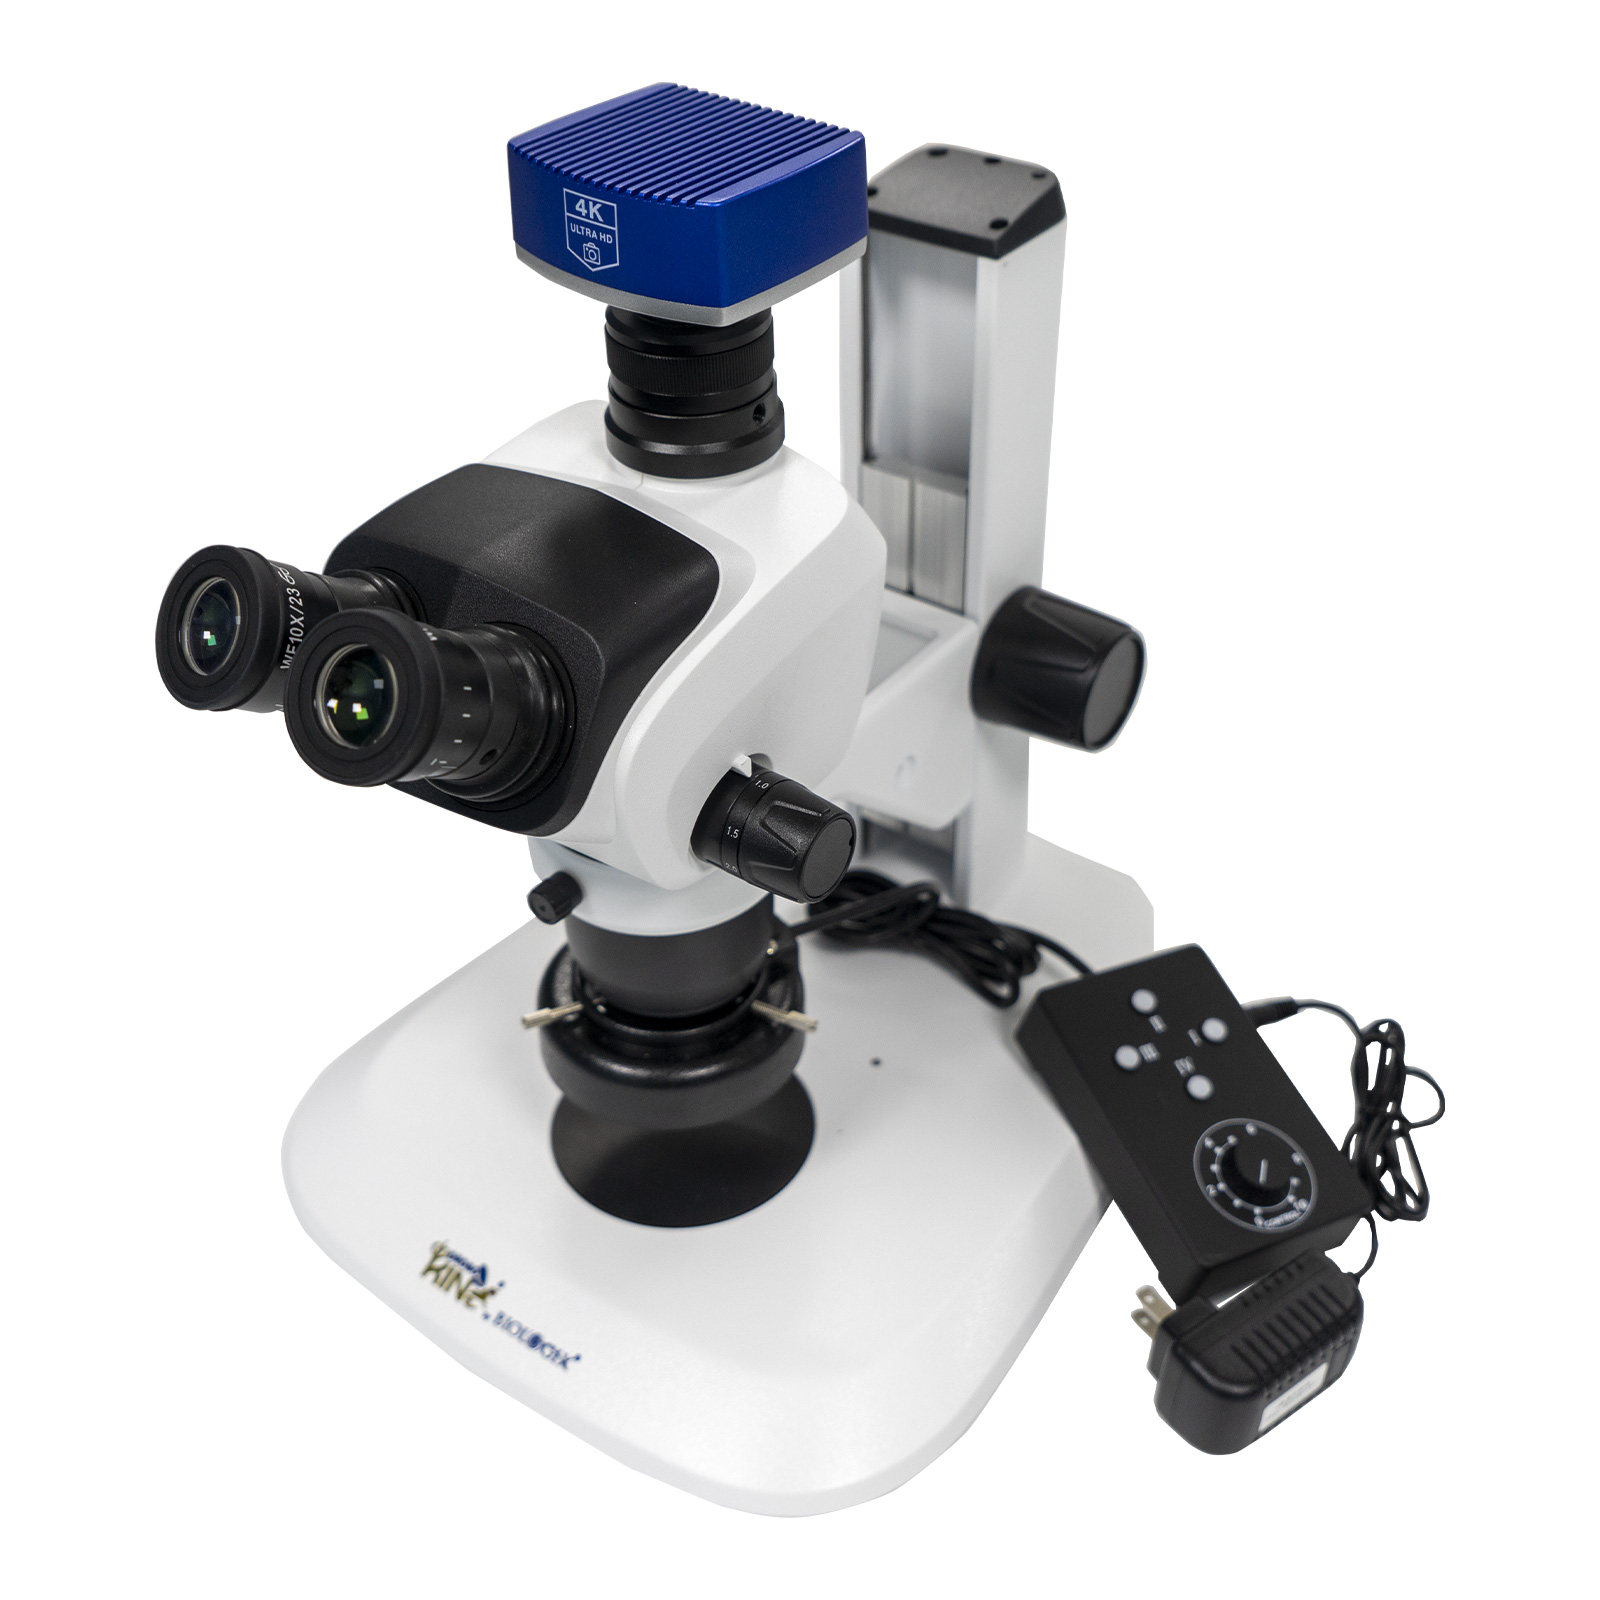 体式三目显微镜-外置底光源和环形灯